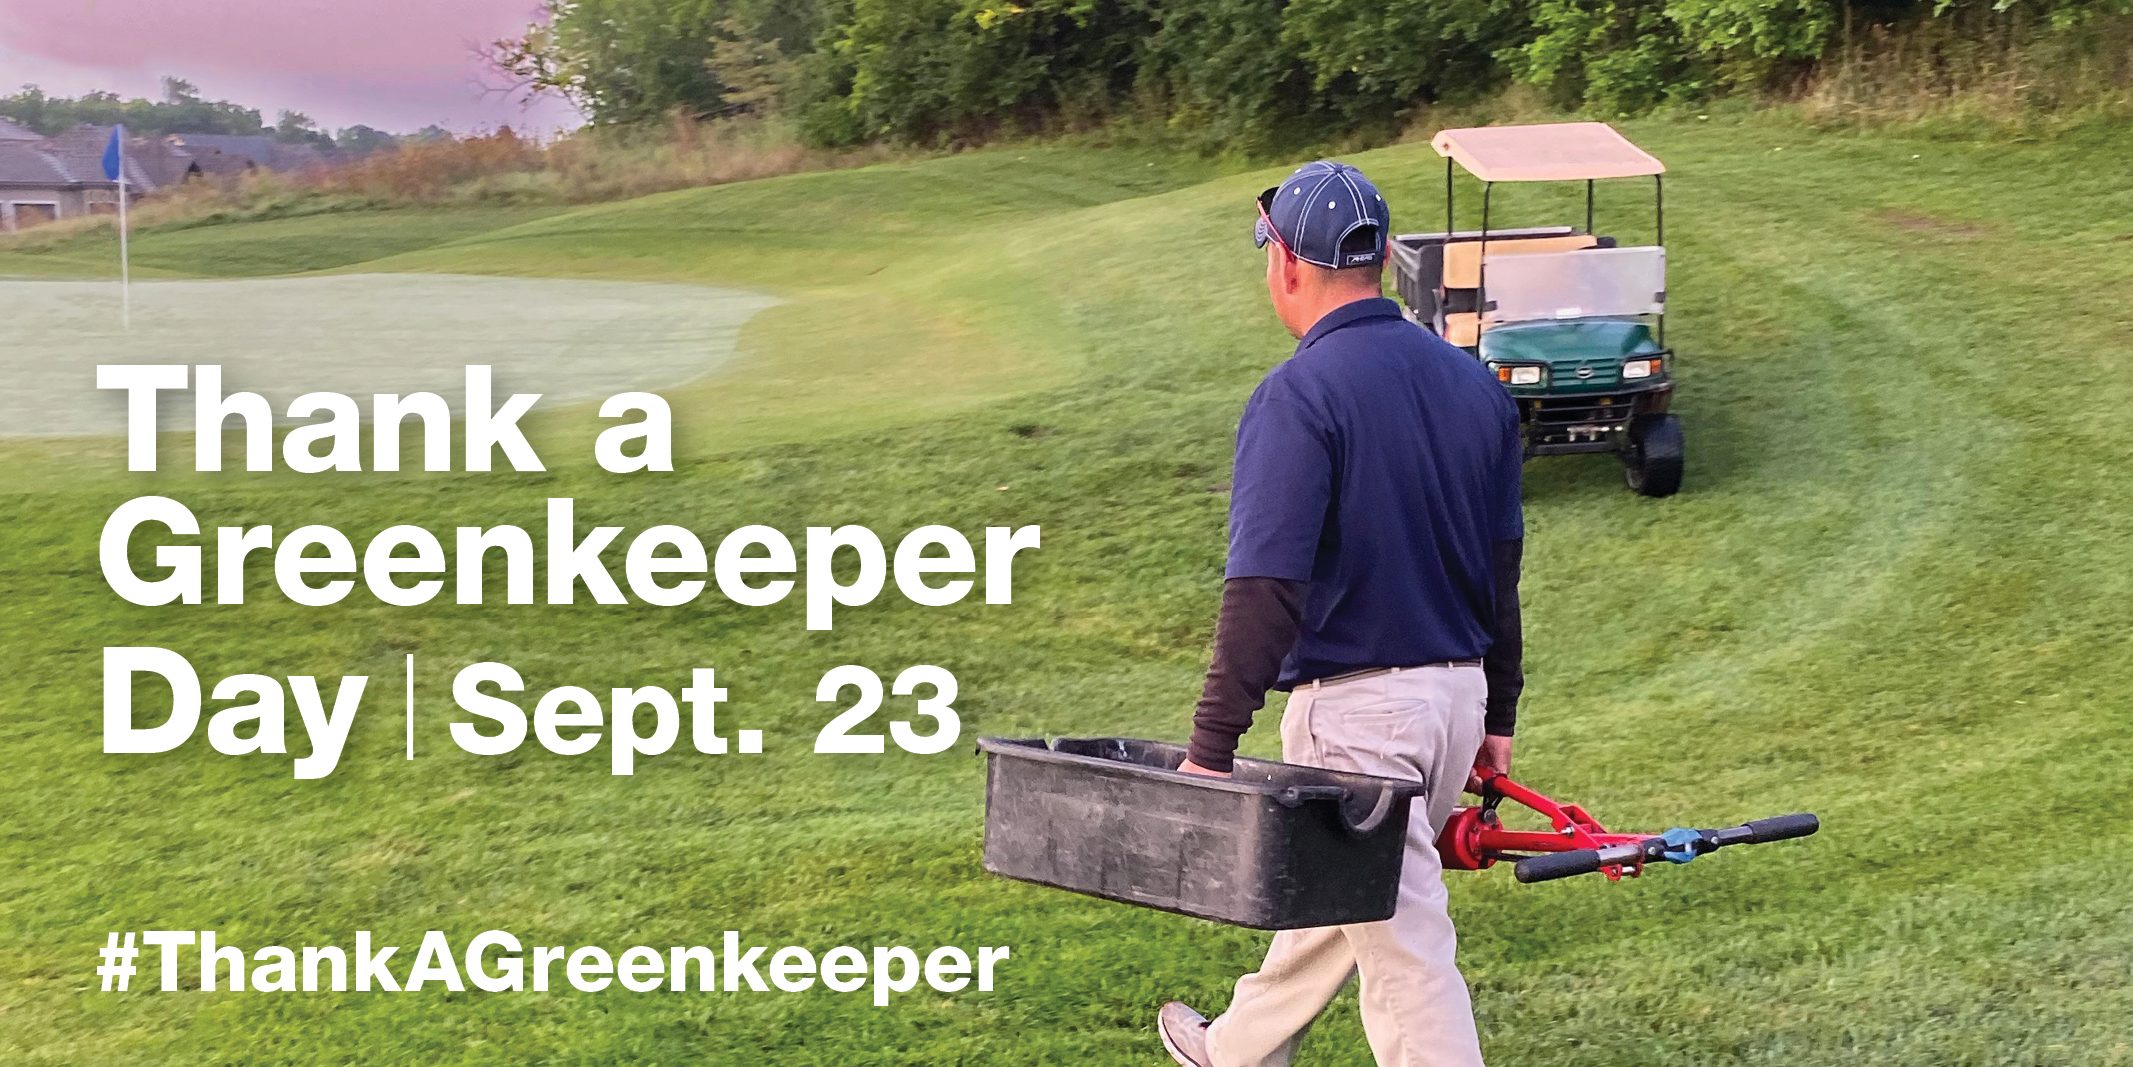 September 23 to 'thank a greenkeeper' | Greenkeeping